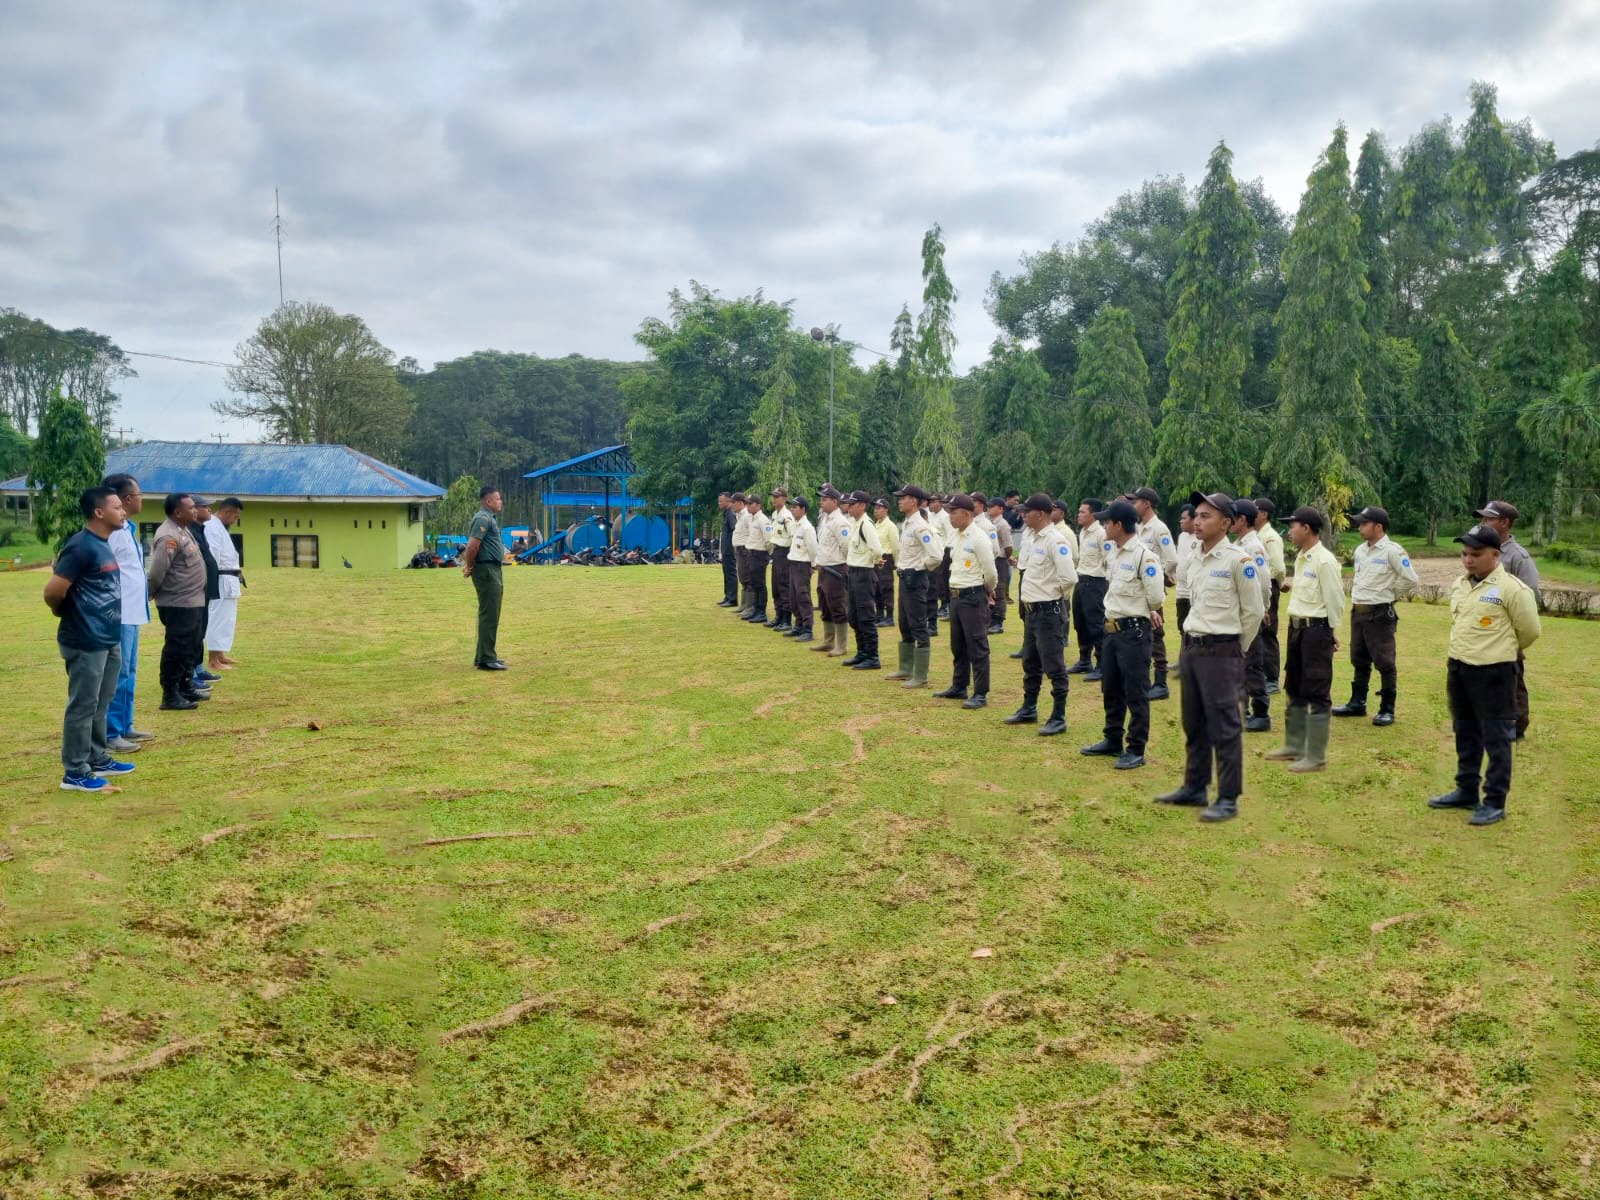 Lindungi Aset Negara, Manajemen Kebun Tandun Perkuat Sinergitas Bersama TNI-Polri